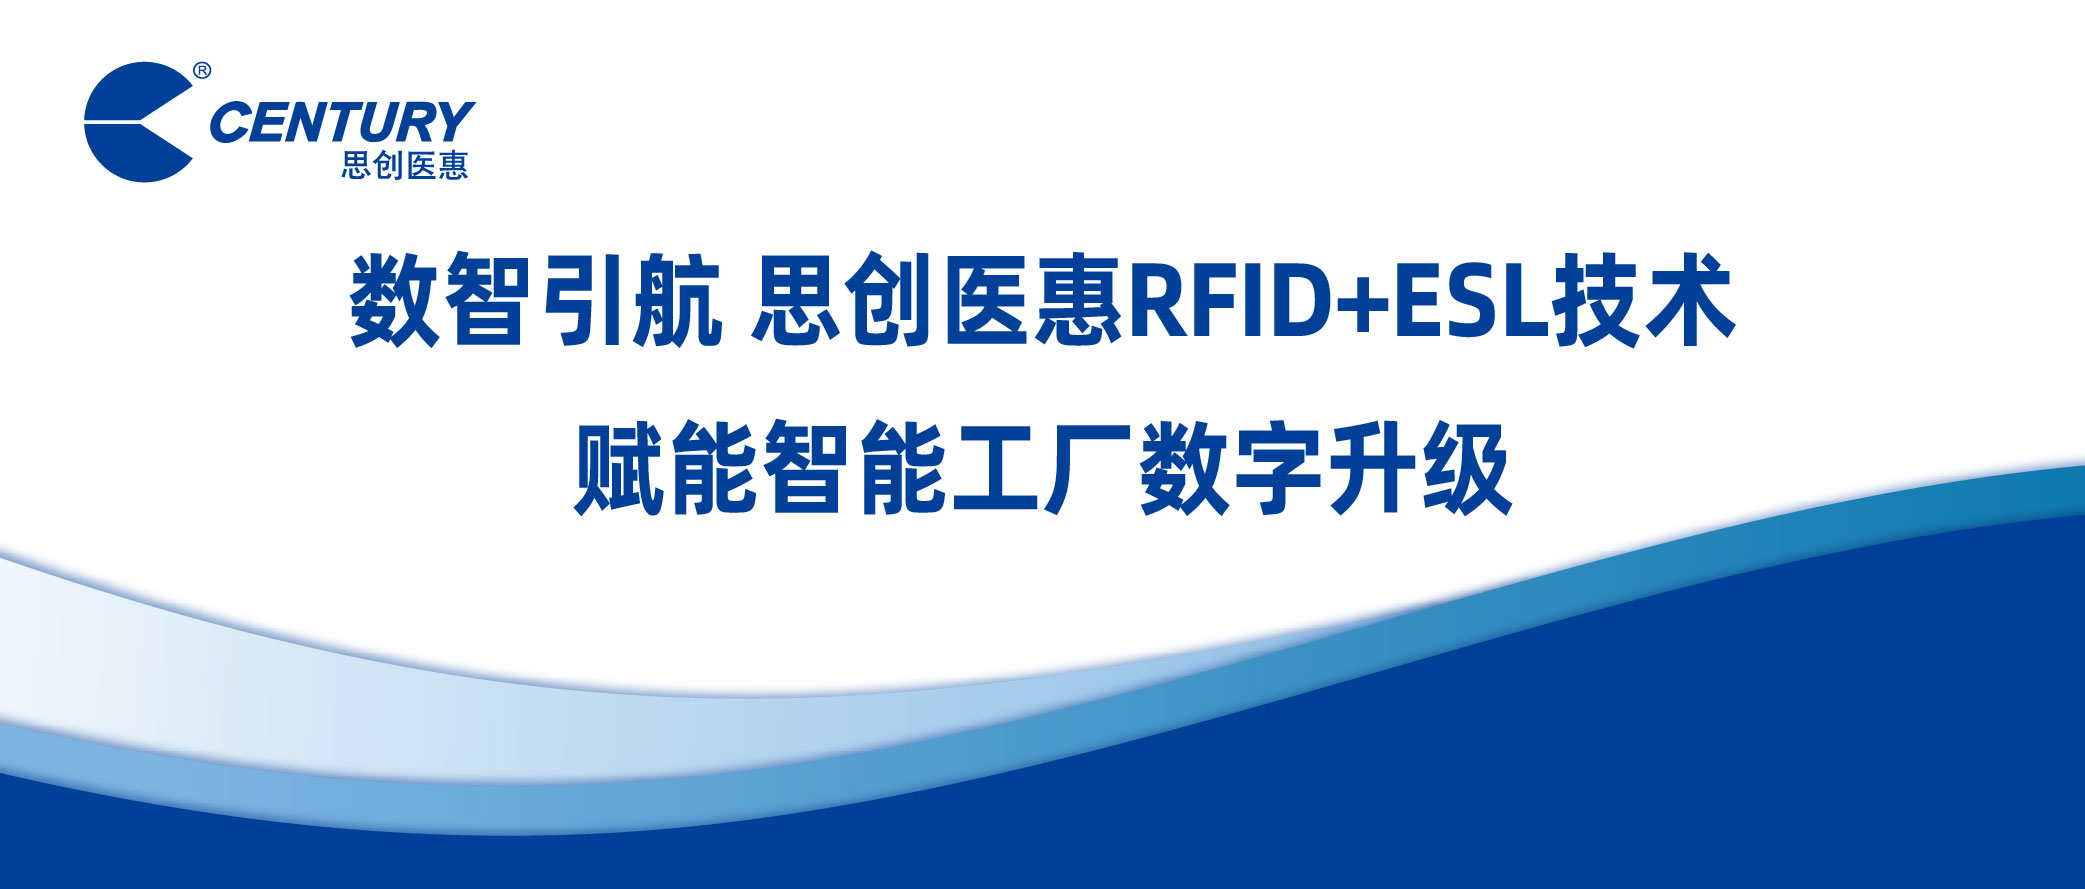 数智引航 思创医惠RFID+ESL技术赋能智能工厂数字升级